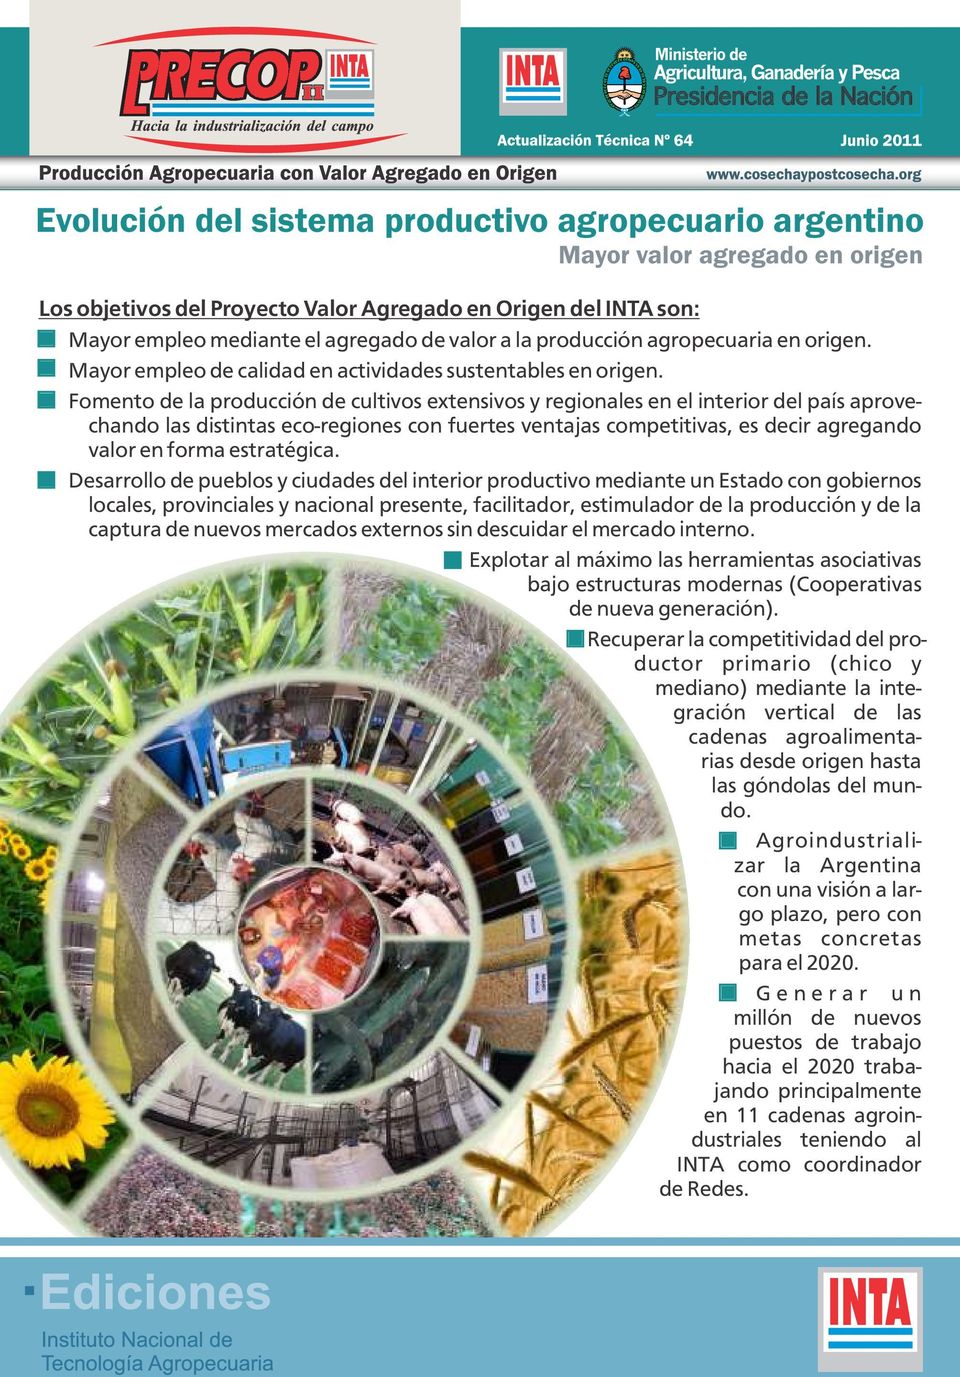 Fomento de la producción de cultivos extensivos y regionales en el interior del país aprovechando las distintas eco-regiones con fuertes ventajas competitivas, es decir agregando valor en forma